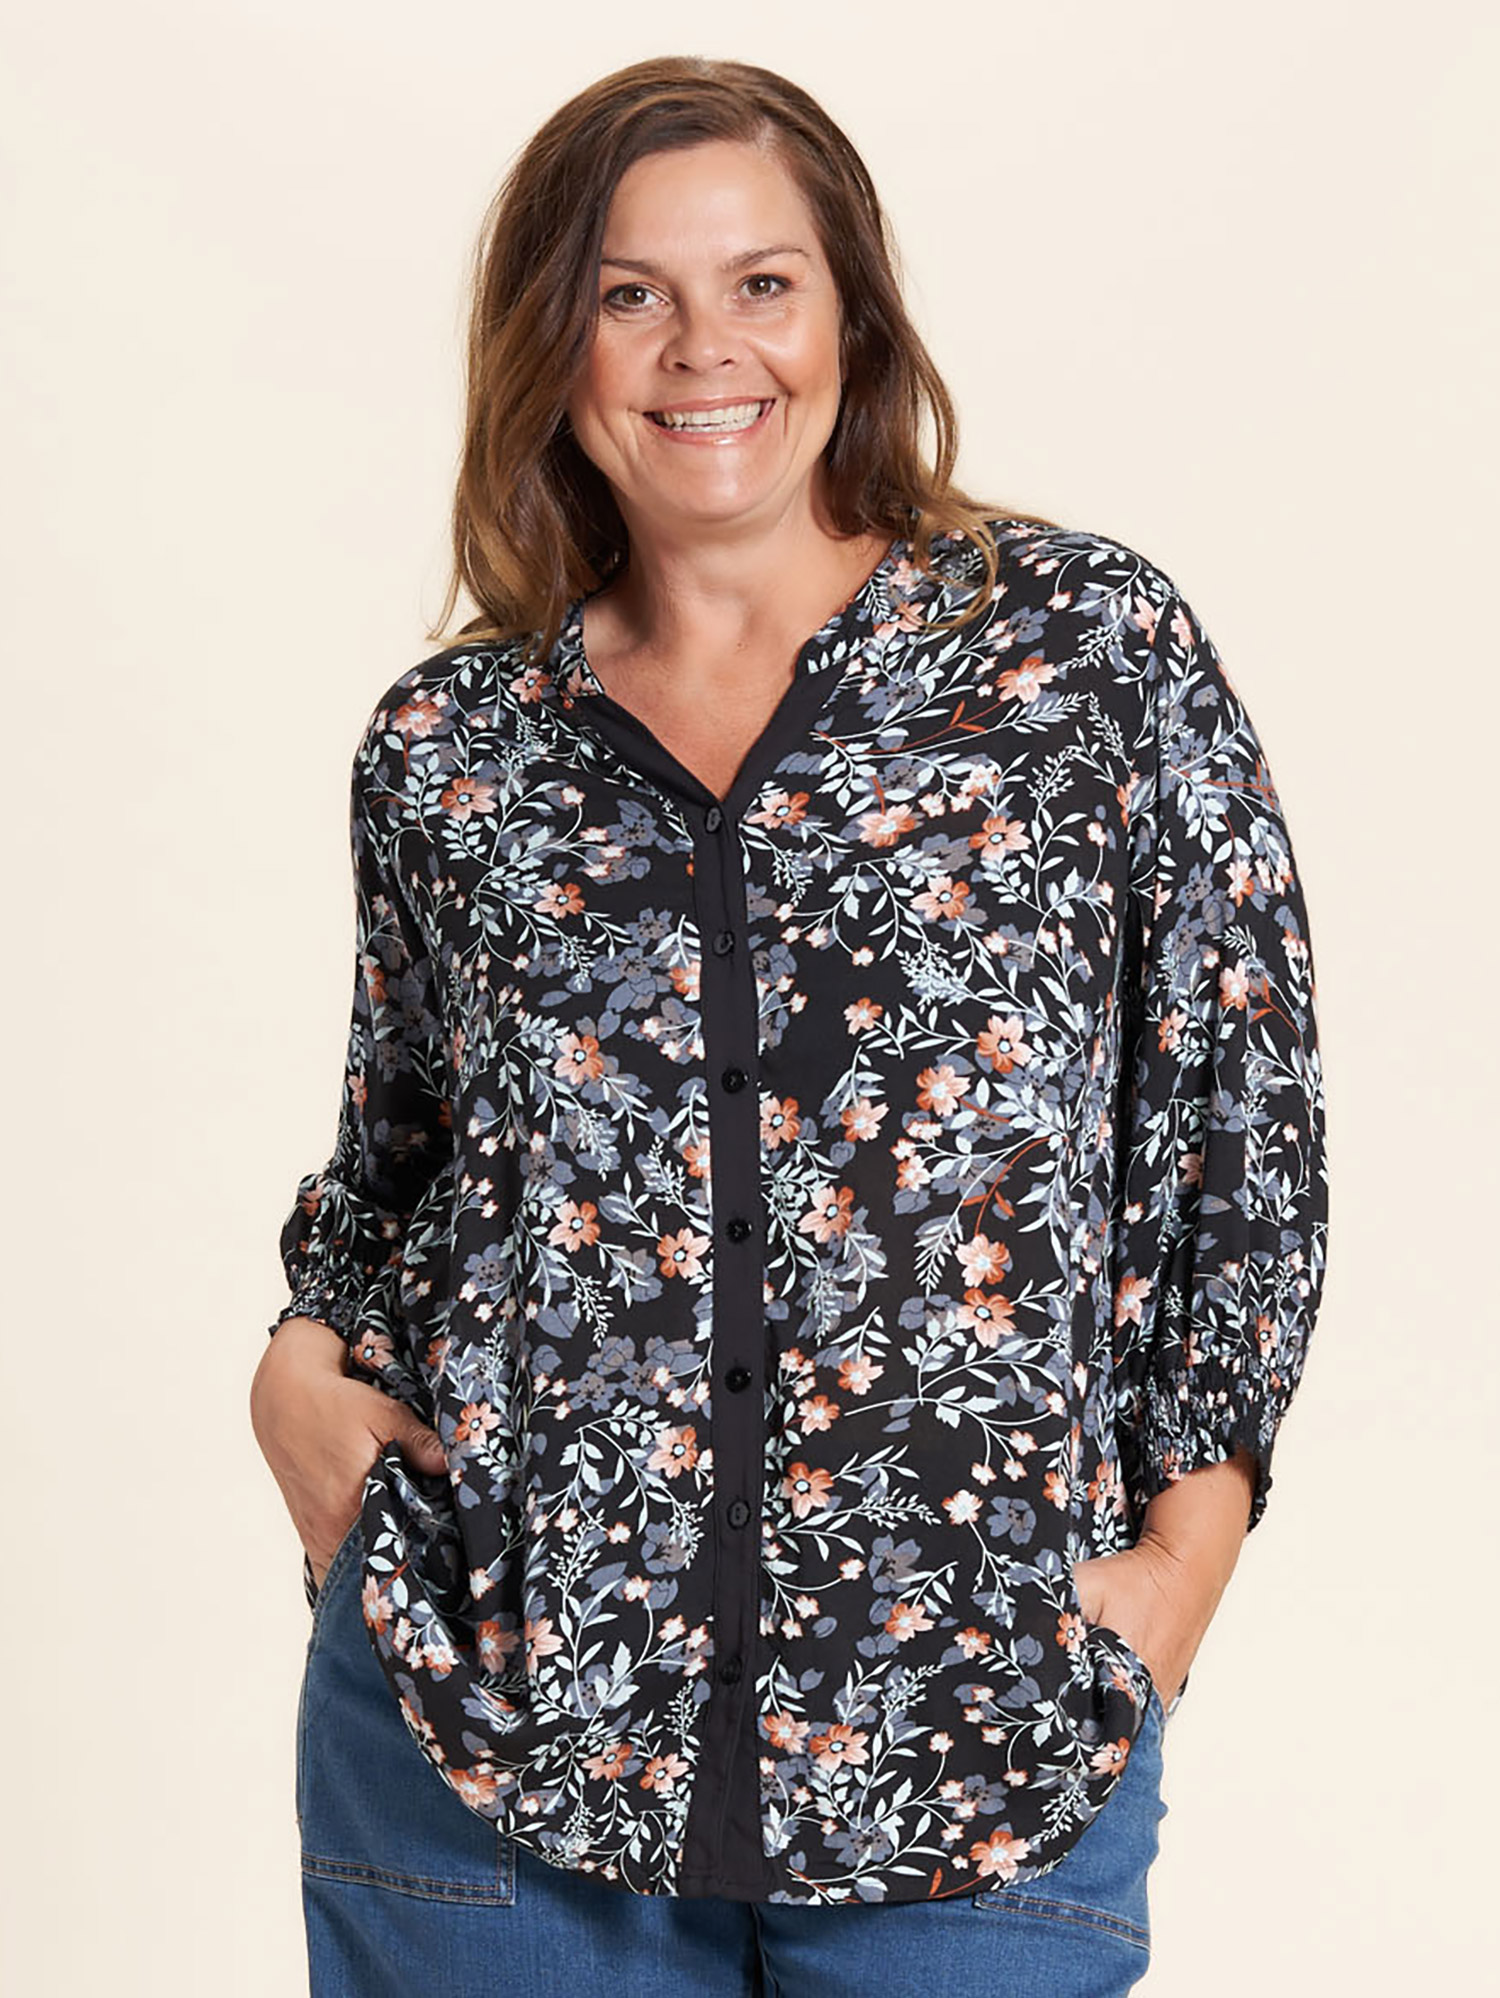 Annemarie - Sort viskose skjorte med smukt blå og rosa blomsterprint fra Gozzip